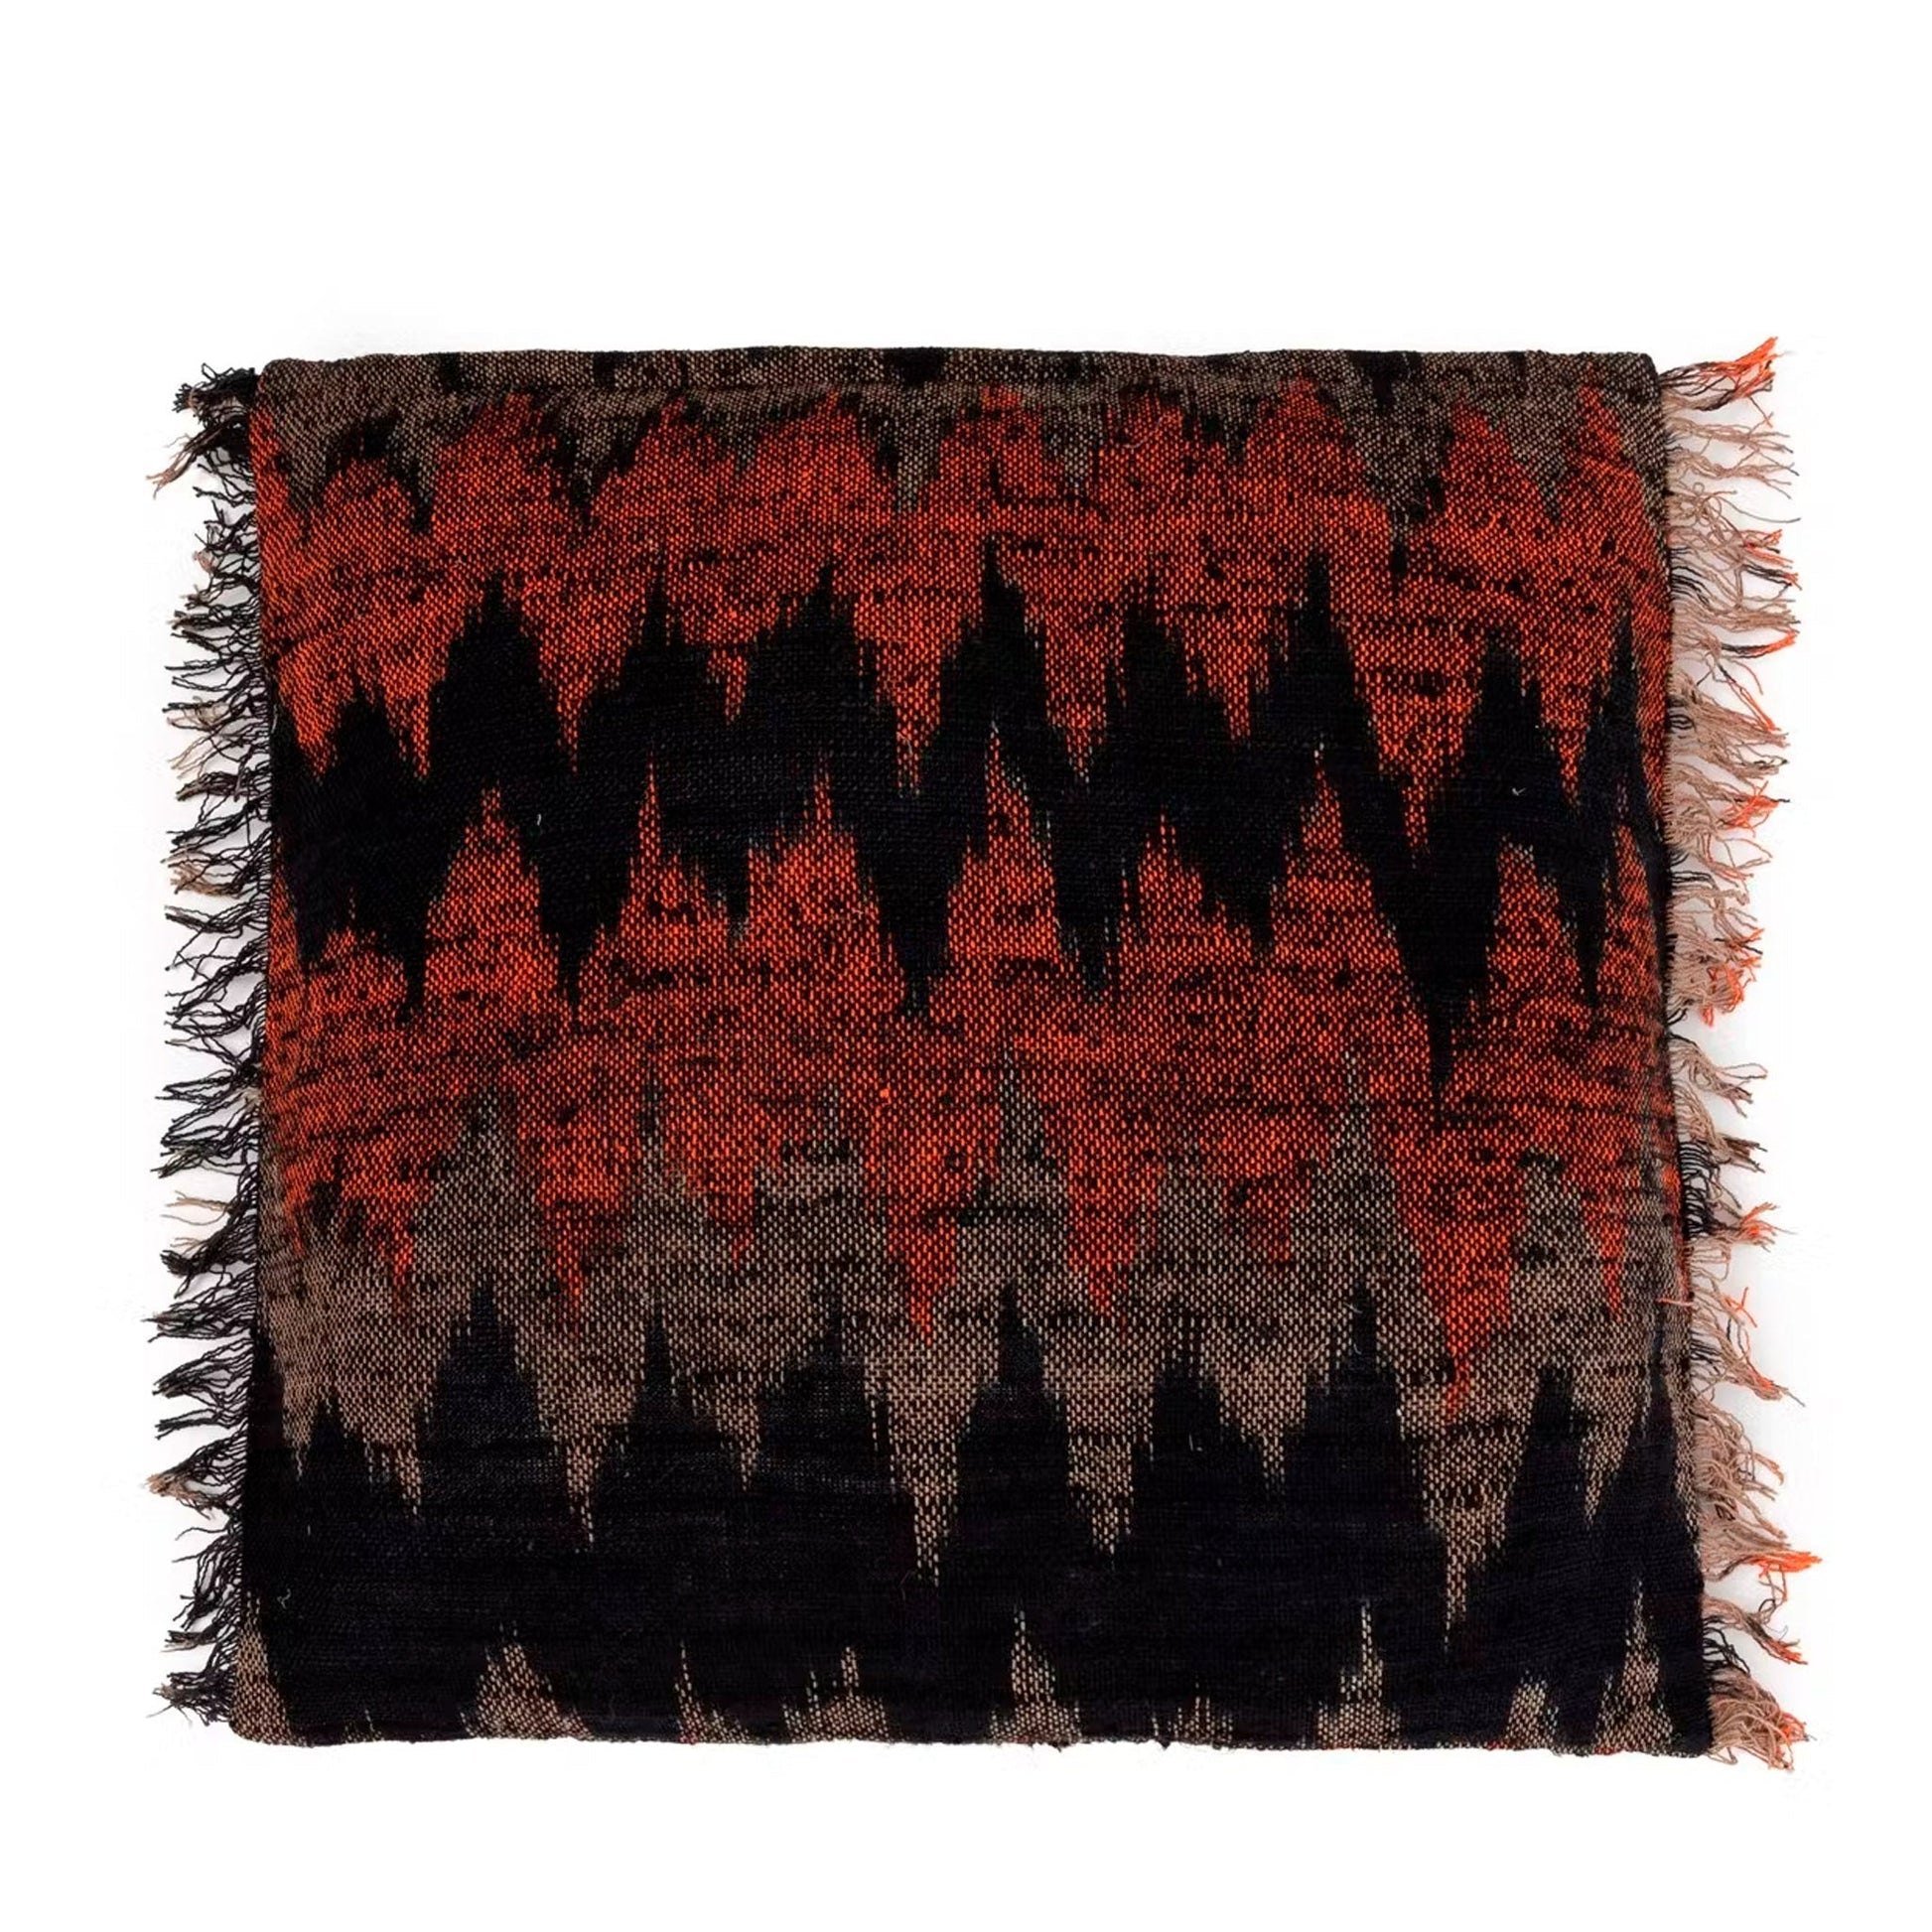 Kissenüberzug mit rostrotem, schwarzem und grauem Muster im Boho-Stil - 60 x 60 xm - Vandeley